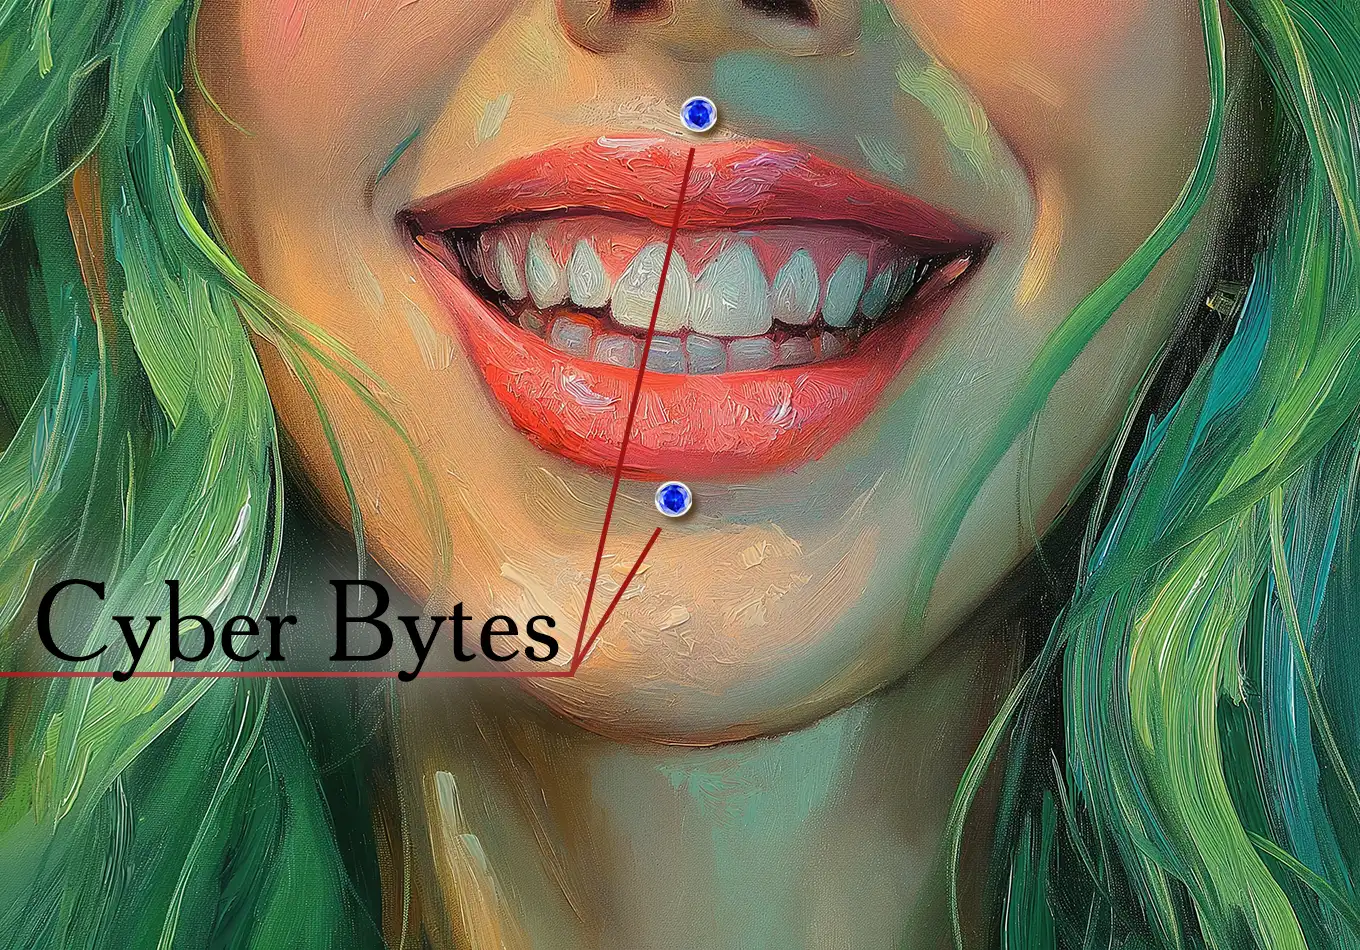 Cyber Bytes piercing | Olertis | US